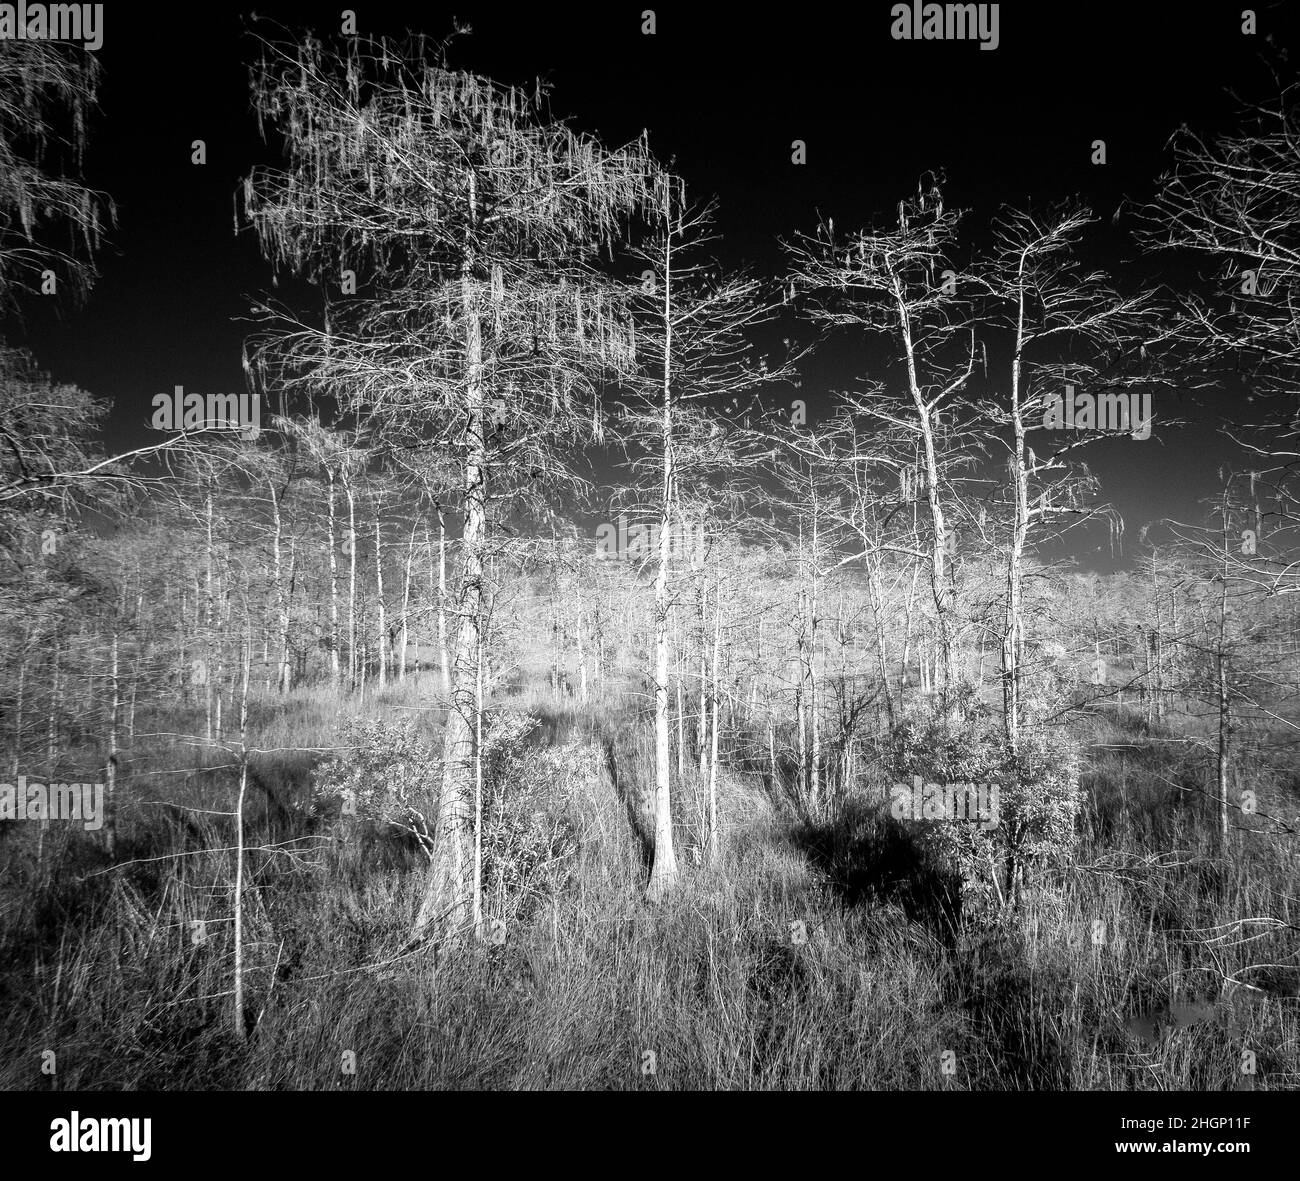 Image rouge infrarouge dans la zone Kirby Storter Roadside Park de la réserve nationale Big Cypress en Floride aux États-Unis Banque D'Images